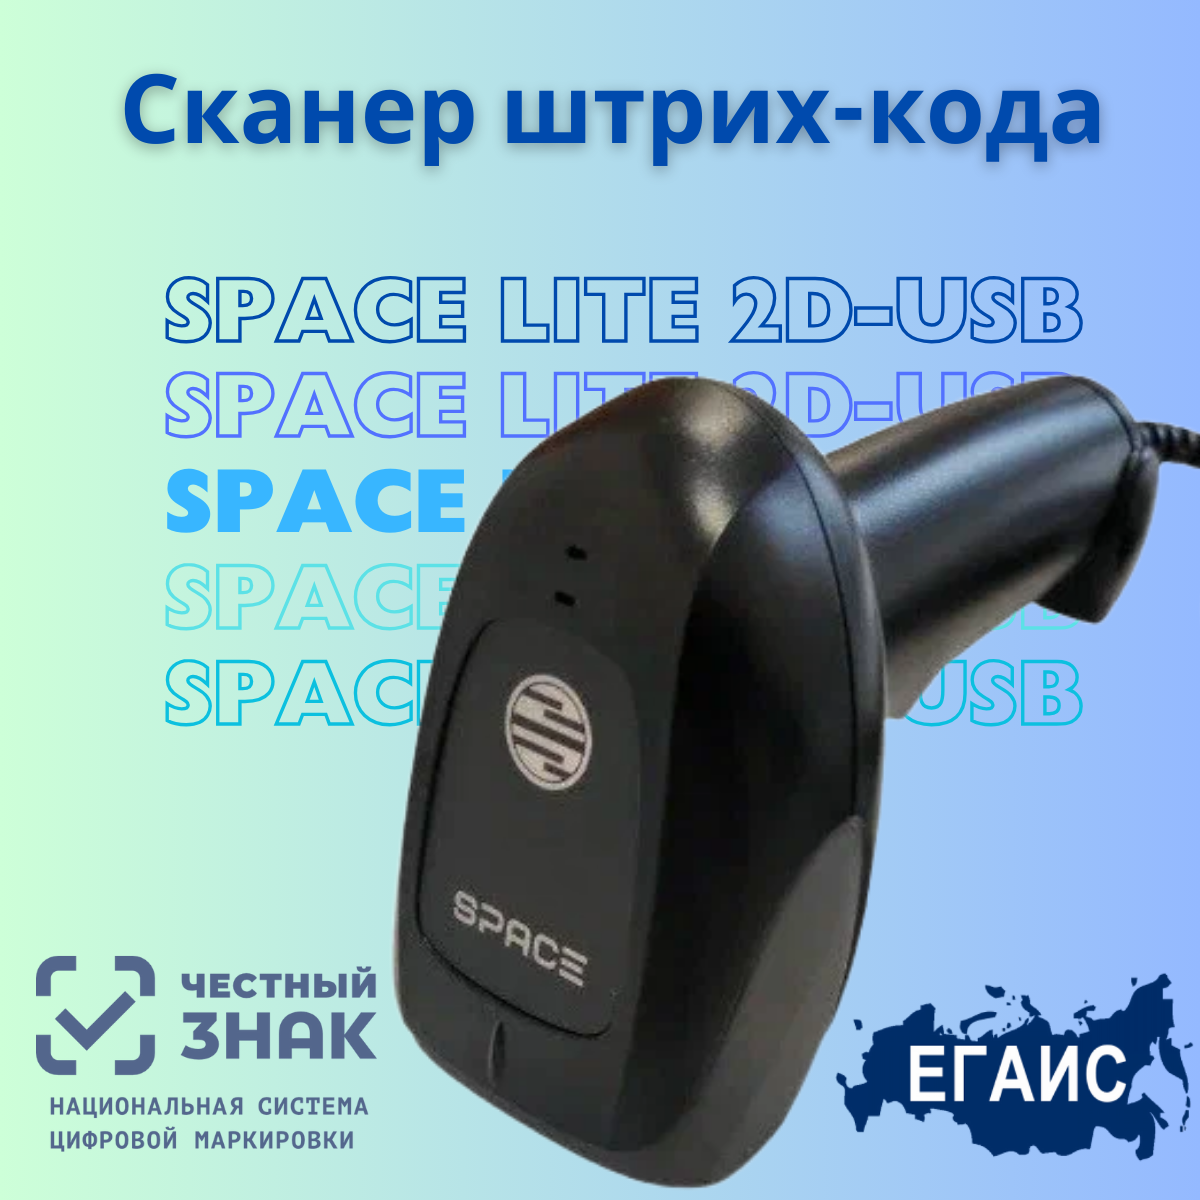 Сканер штрих кода SPACE LITE 2D-USB (черный, ручной) для ПВЗ